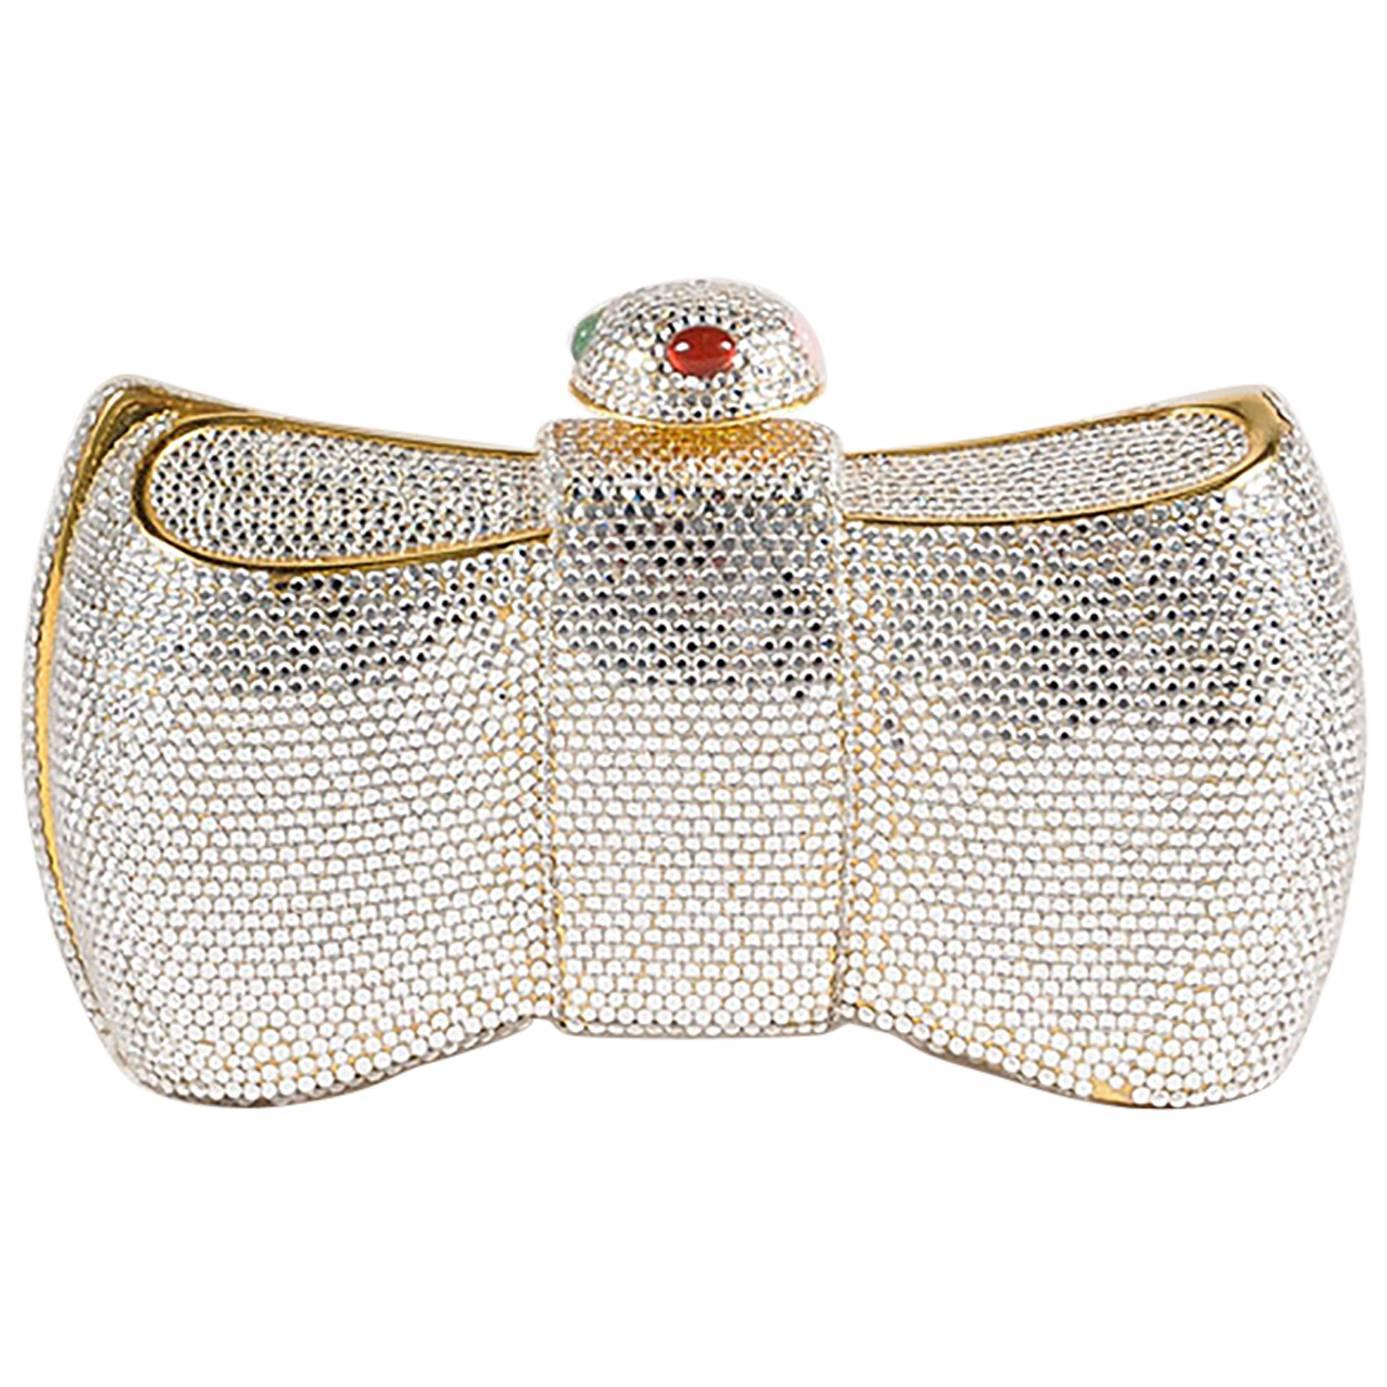 Judith Leiber Gold Tone Crystal Embellished Bow Minaudiere Shoulder Bag For Sale